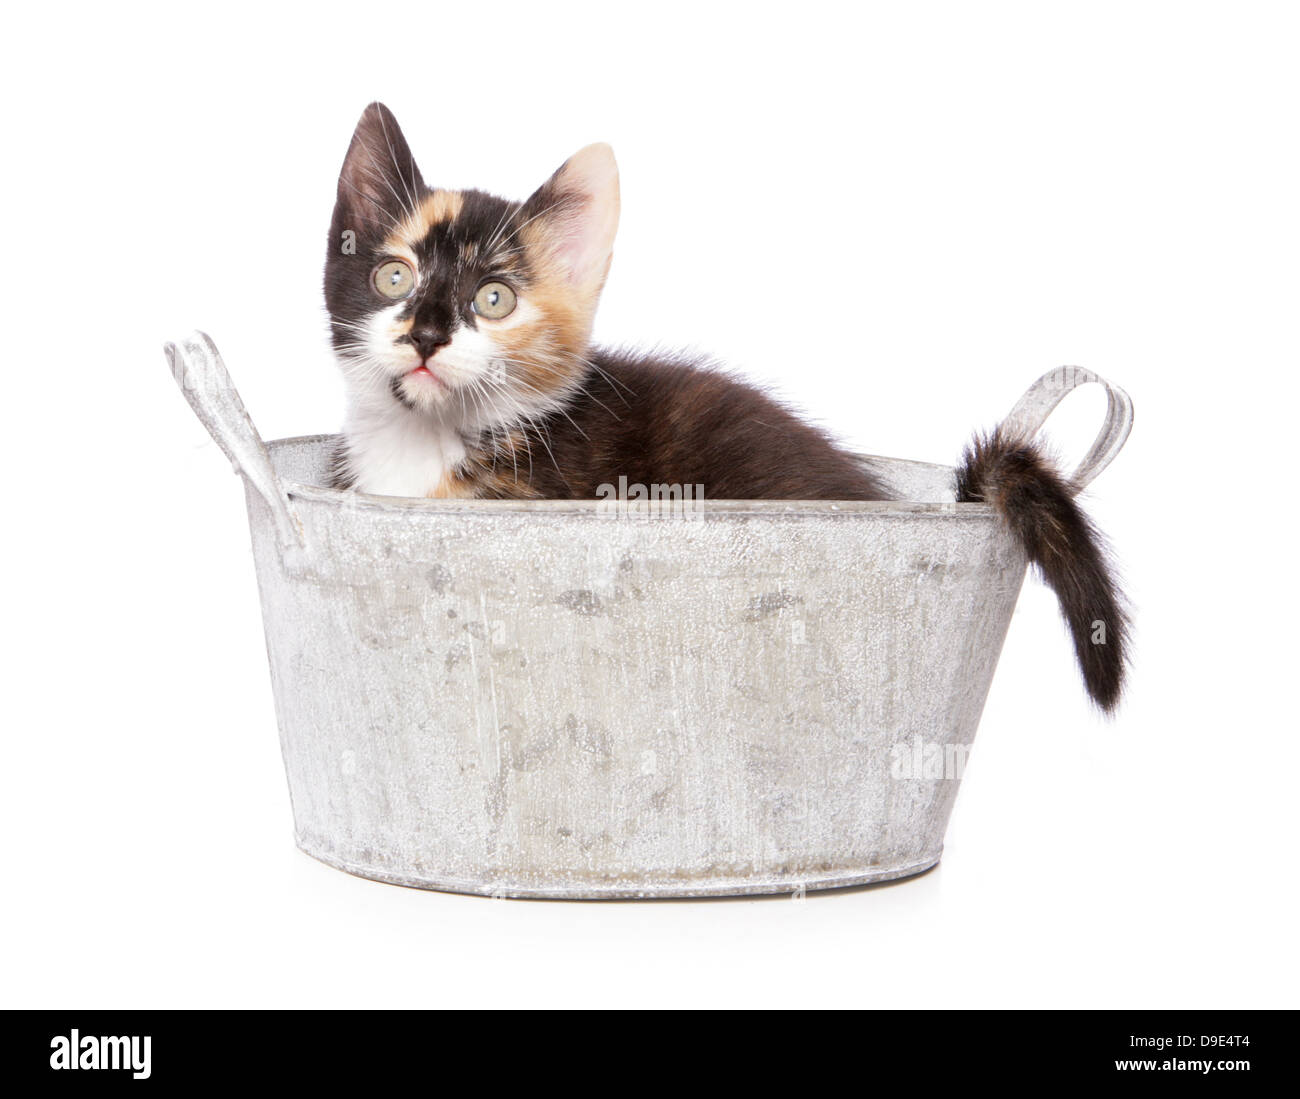 kitten in a bath Stock Photo